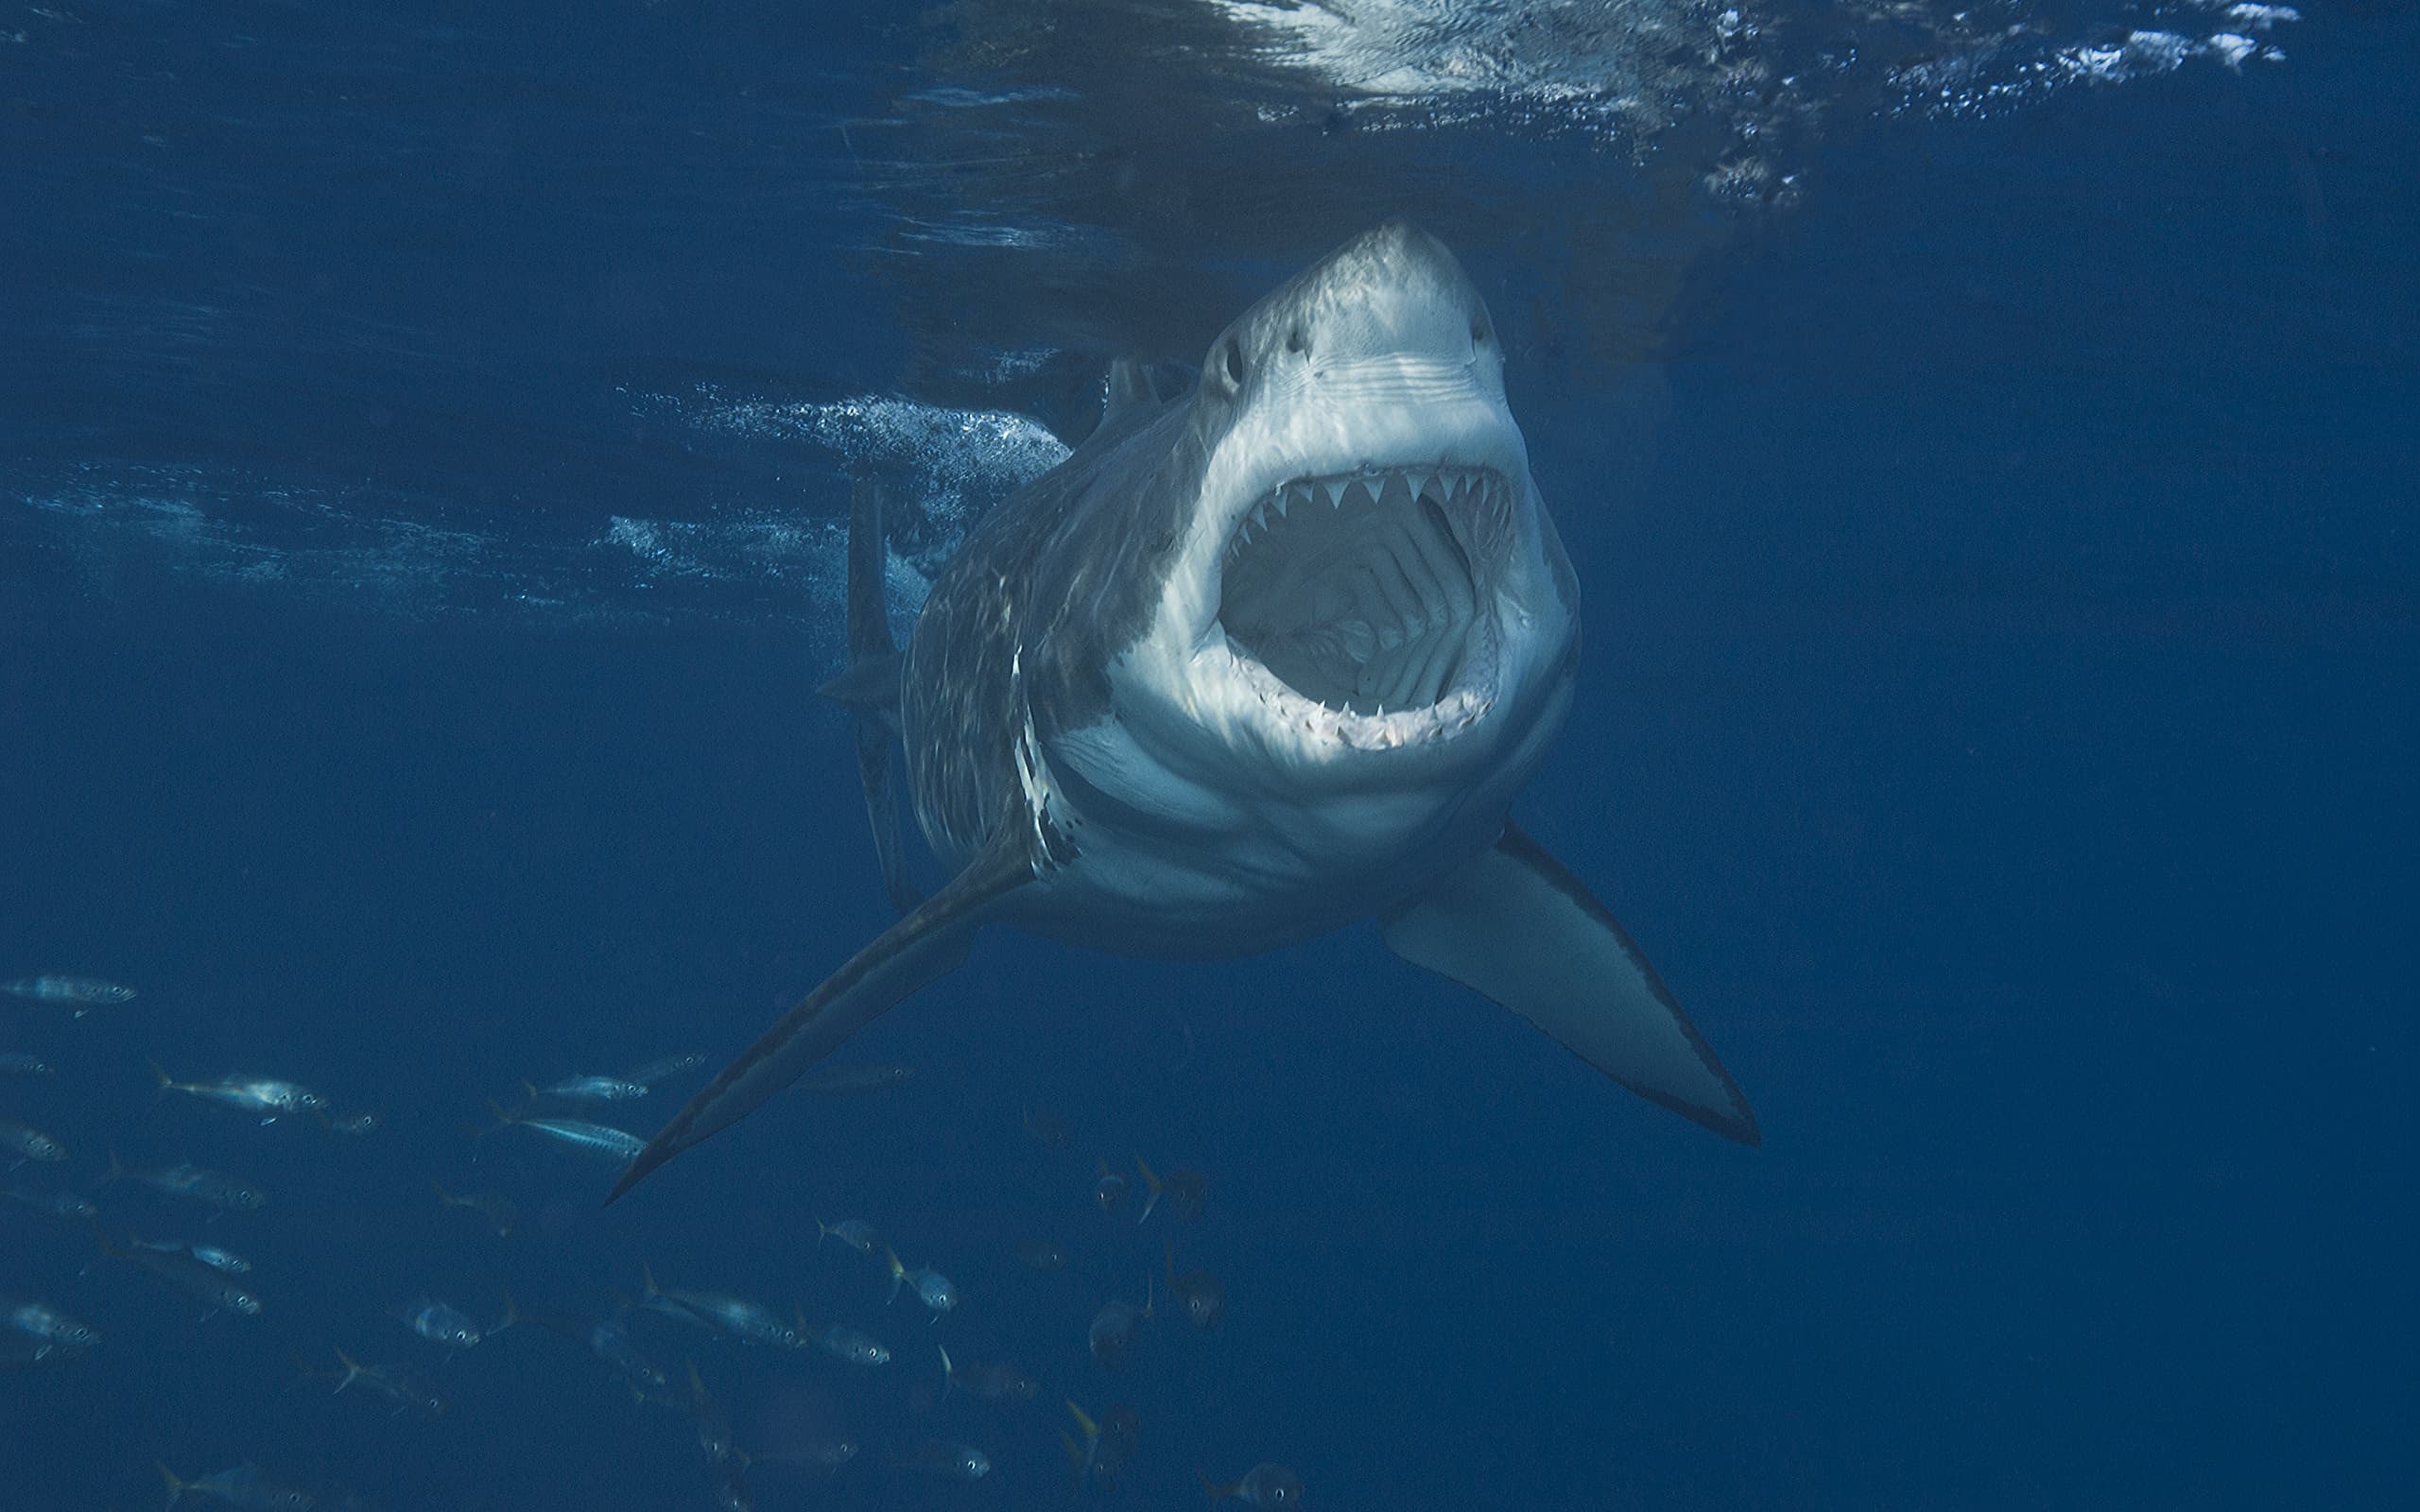 Grande squalo bianco sull'attacco che mostra la bocca spalancata.